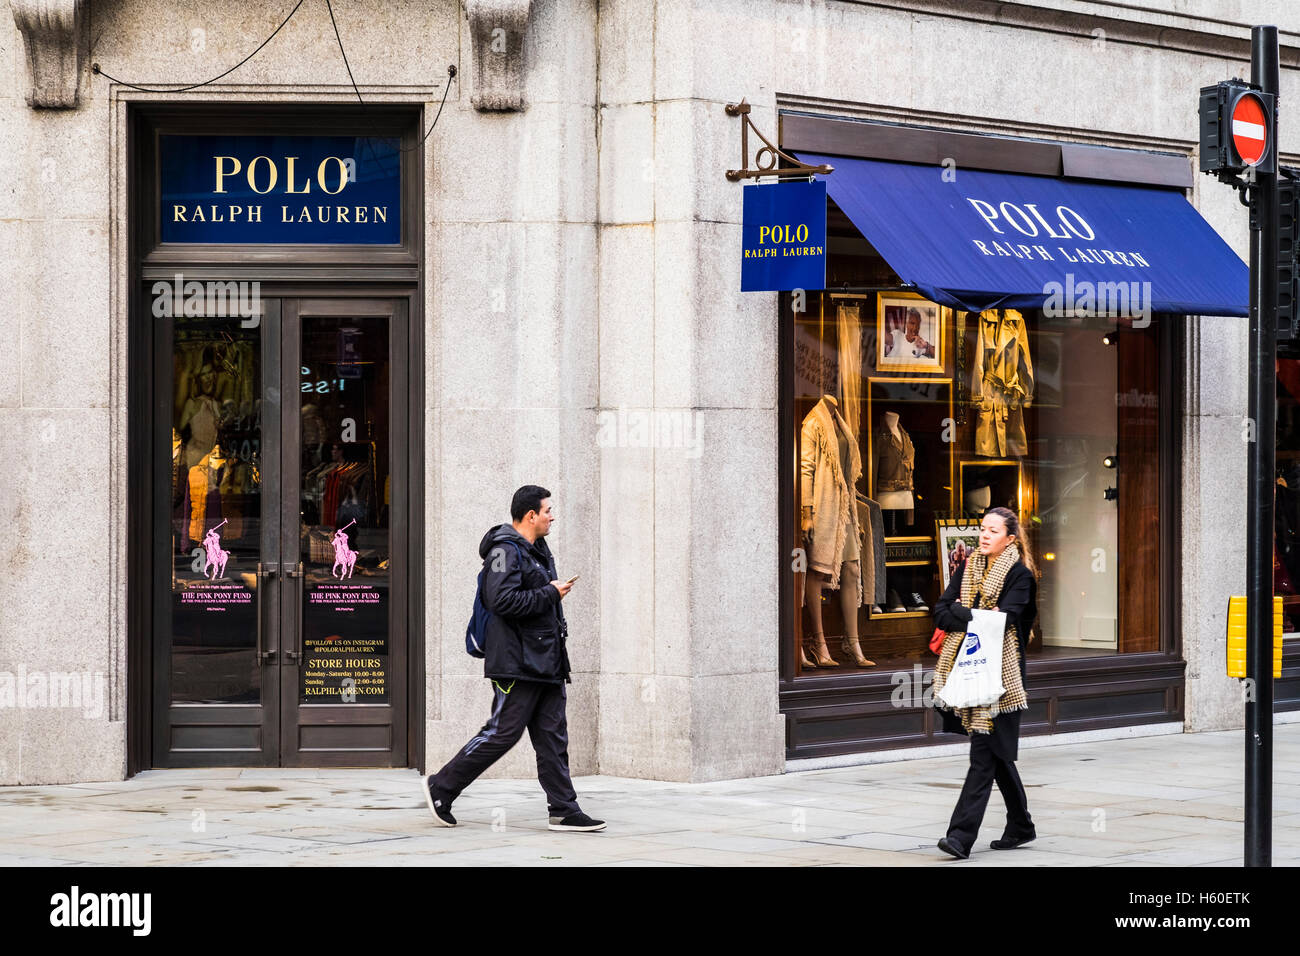 Polo store, Regent Street, England, U.K Stock Photo Alamy